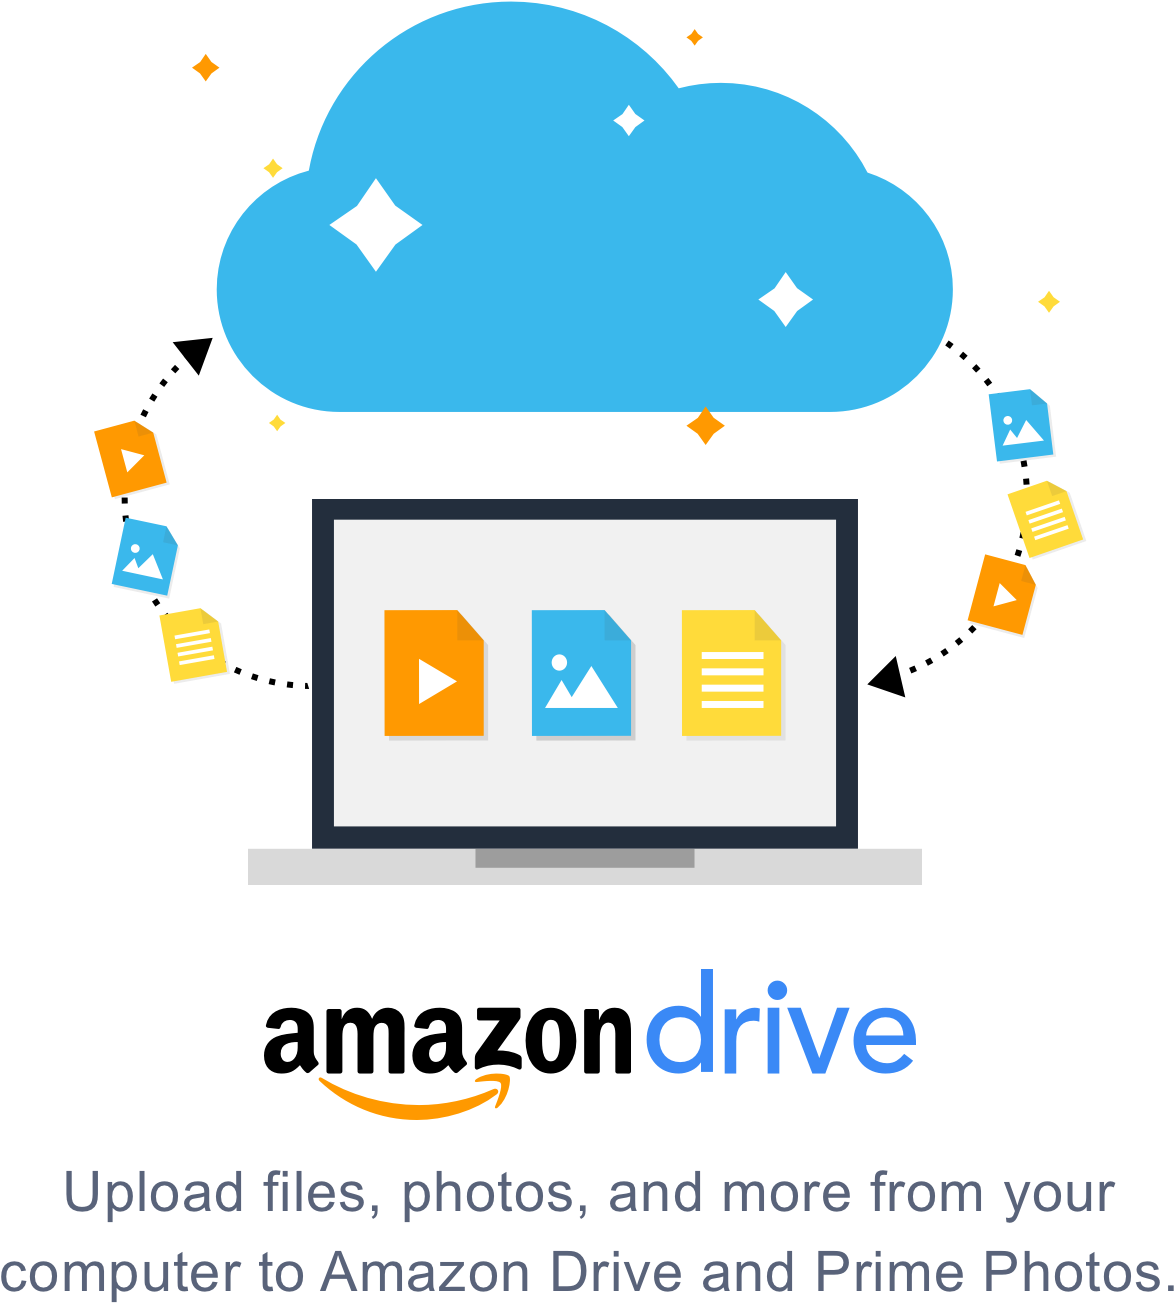 Amazon облачные сервисы. Амазон облачное хранилище. Amazon cloud Drive. Amazon Drive logo. Амазон облако хранилища картинки.